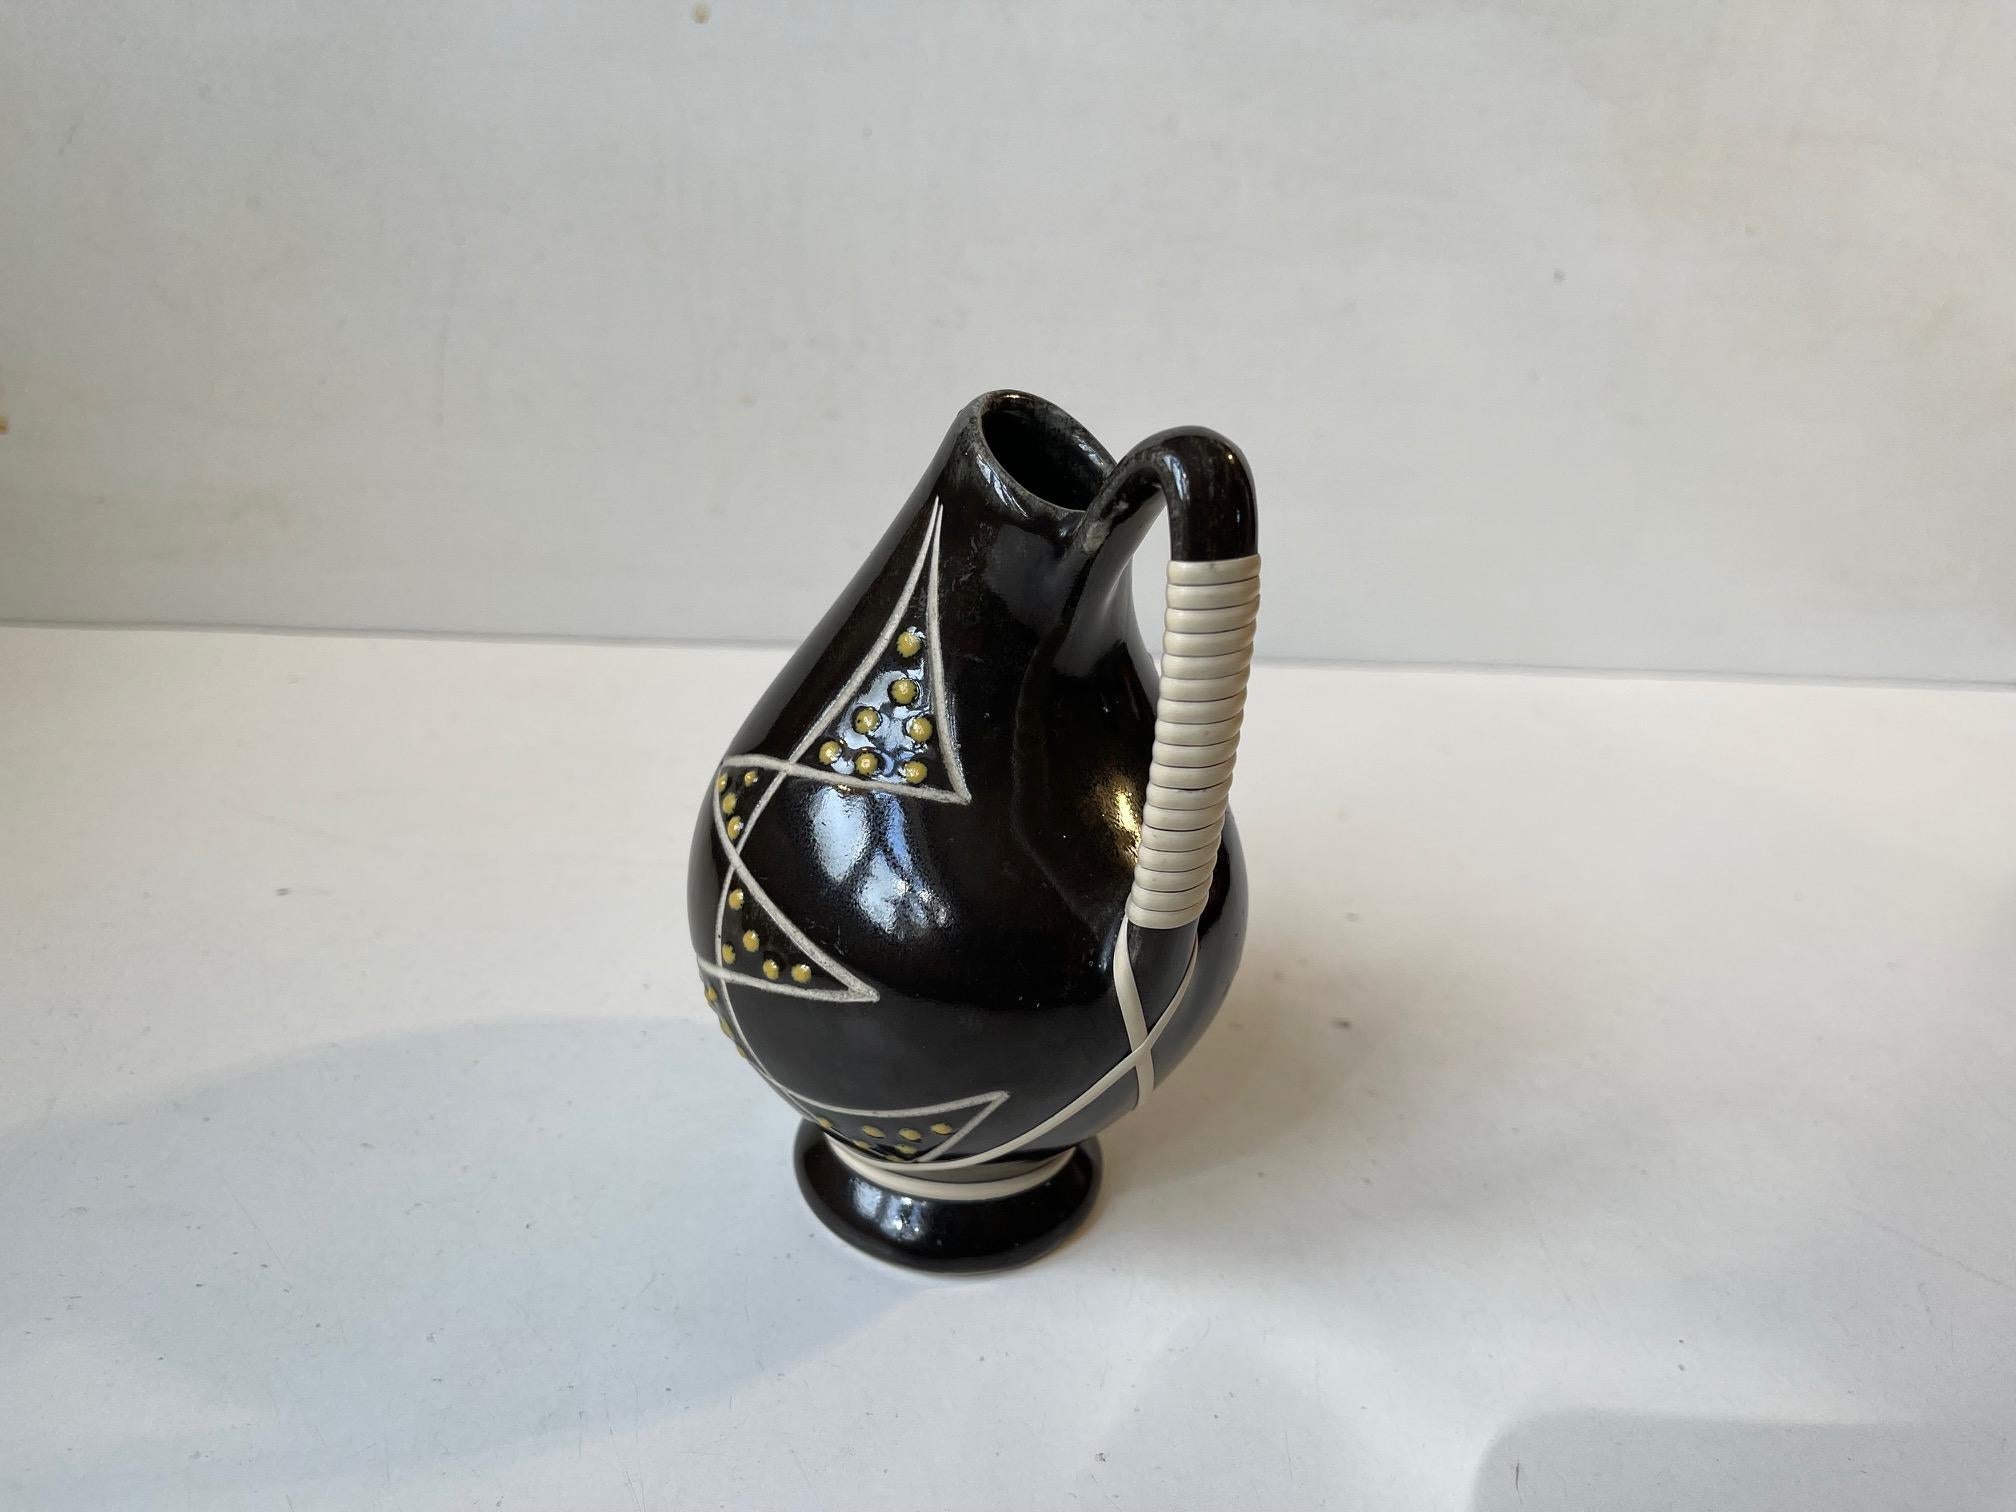 Glazed Søholm Danish Modernist Ceramic Vase in Black Glaze, 1950s For Sale